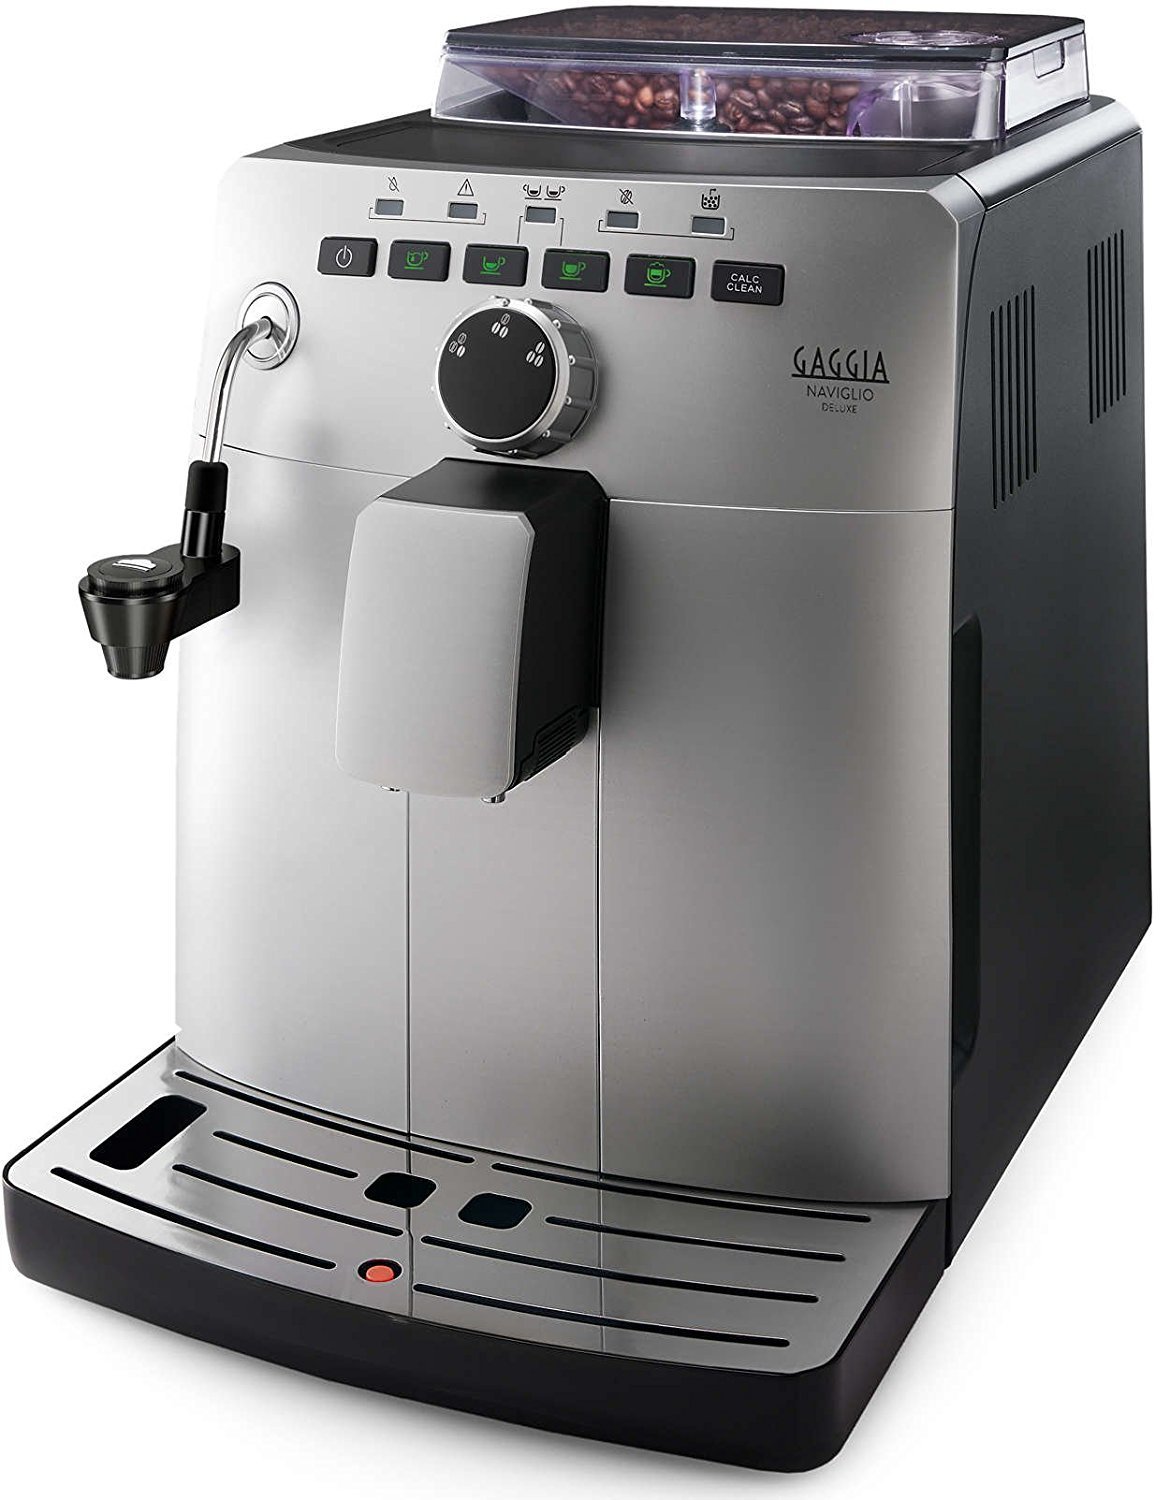 Gaggia Naviglio Deluxe Bean to Cup Coffee Machine